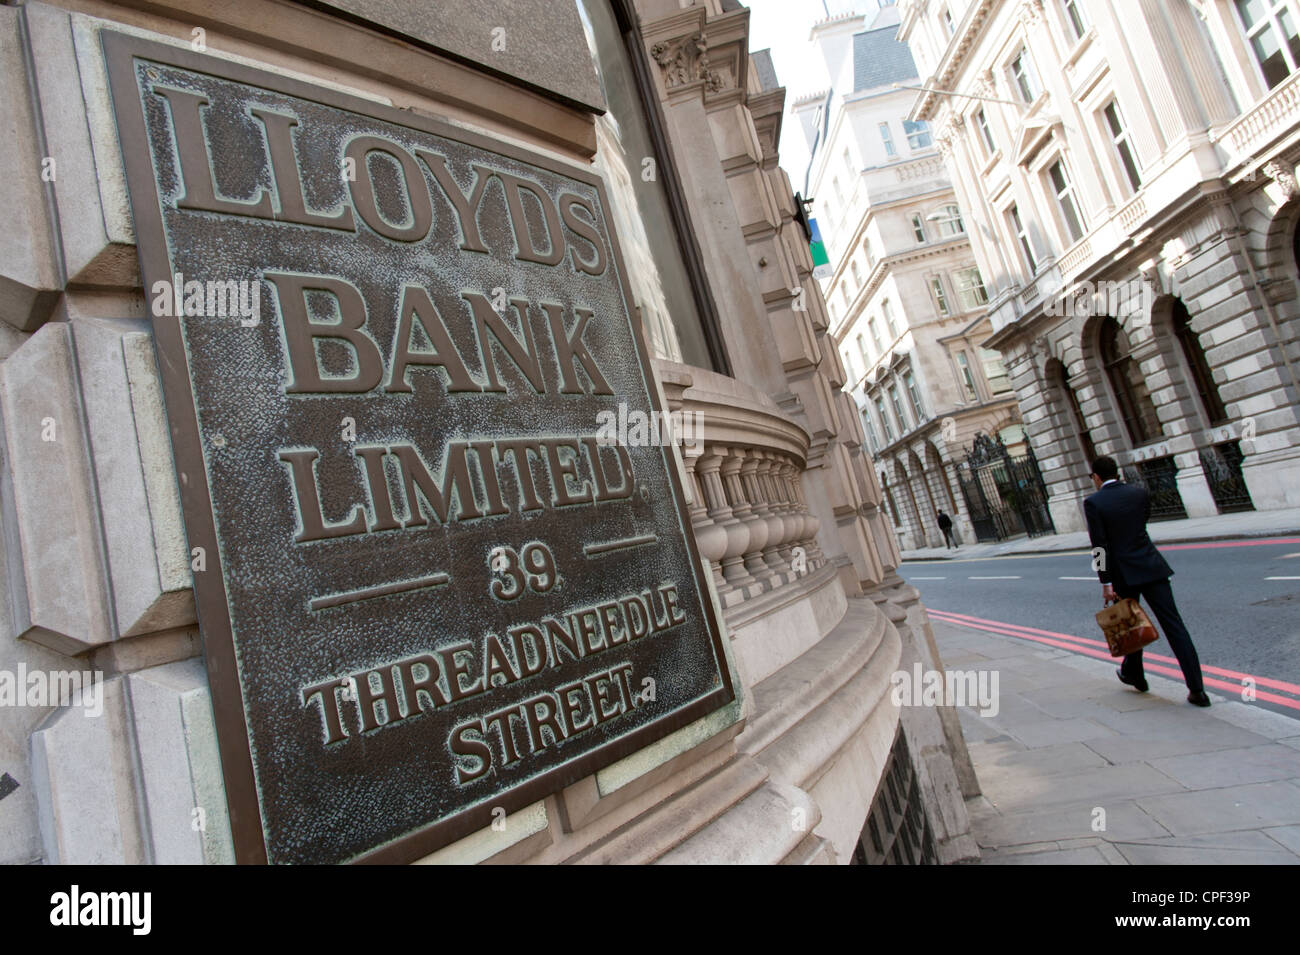 La banque Lloyds sur Threadneedle Street, London, England, UK Banque D'Images